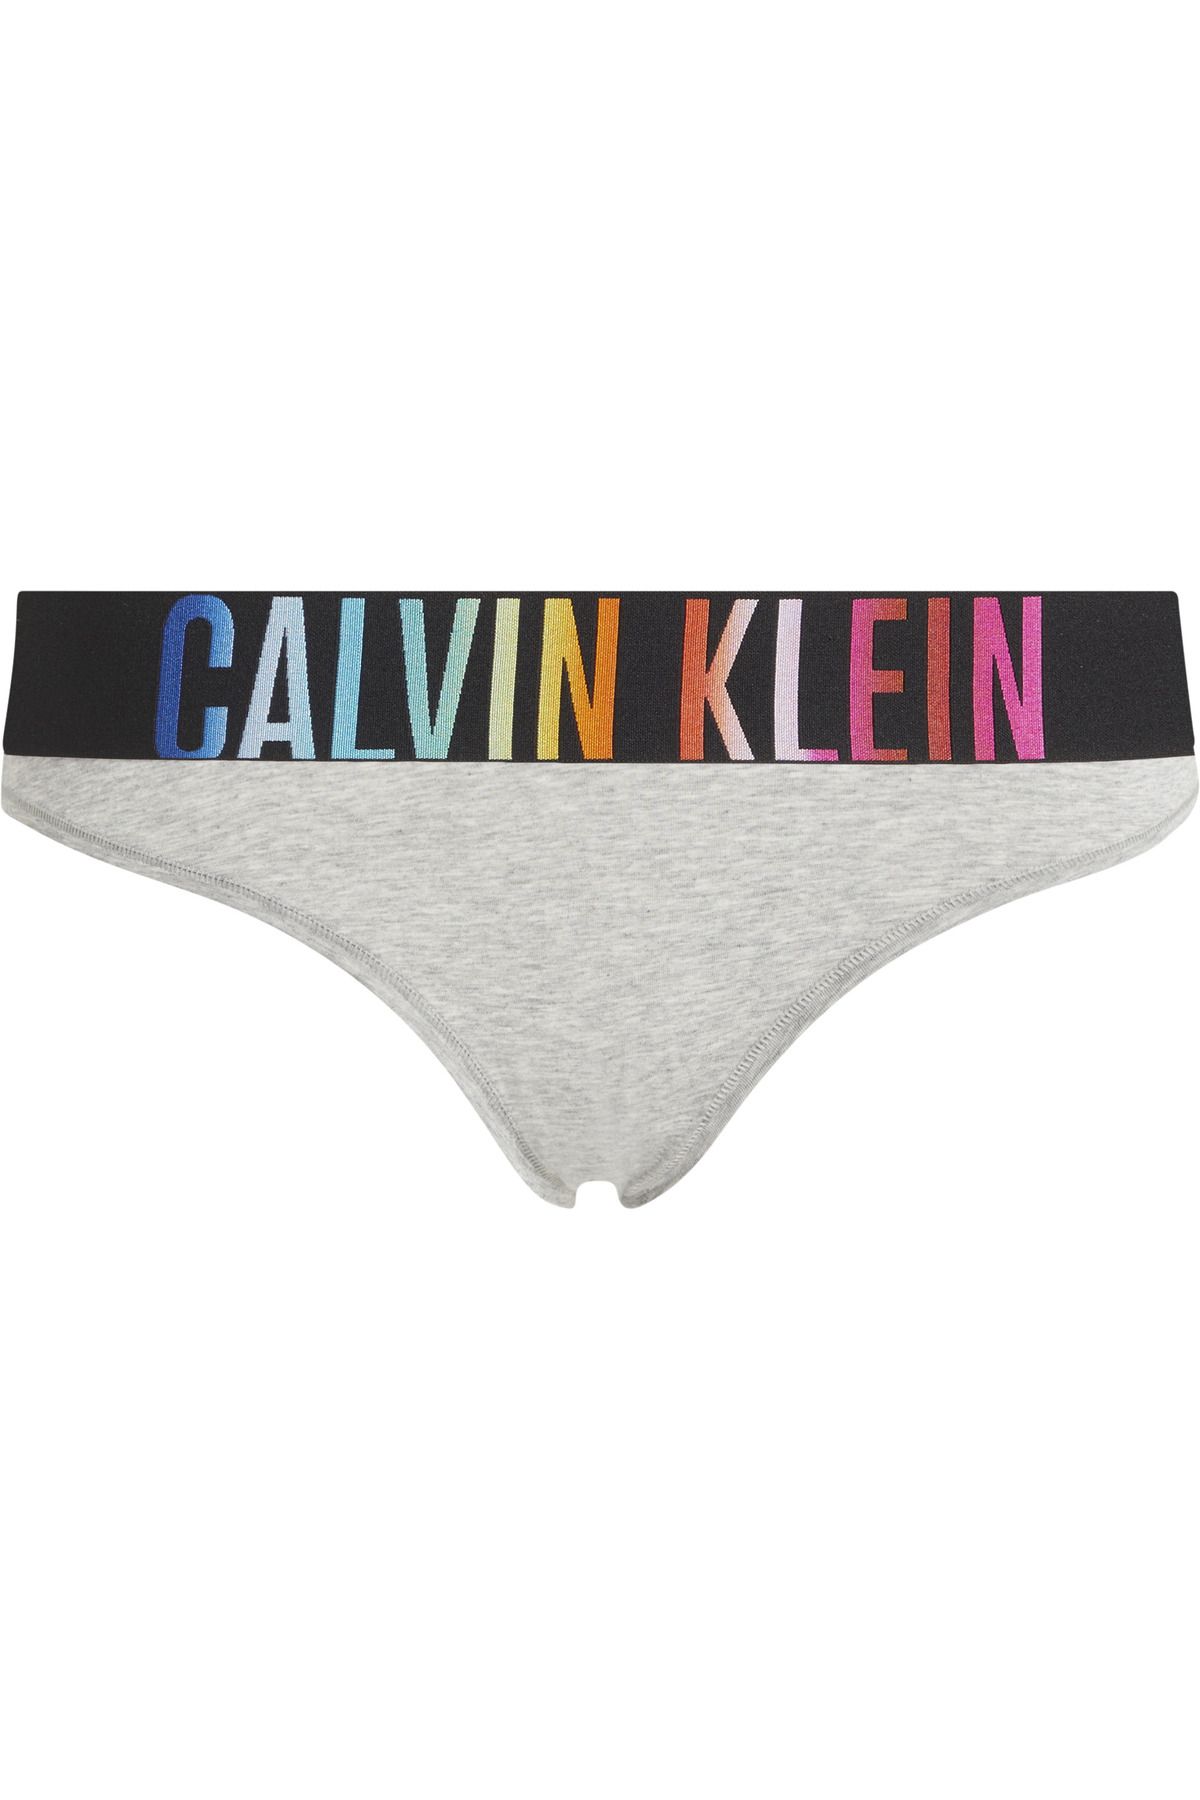 Calvin Klein Kadın Marka Logolu Elastik Bantlı Günlük Kullanıma Uygun Gri Külot 000QF7835E-P7A